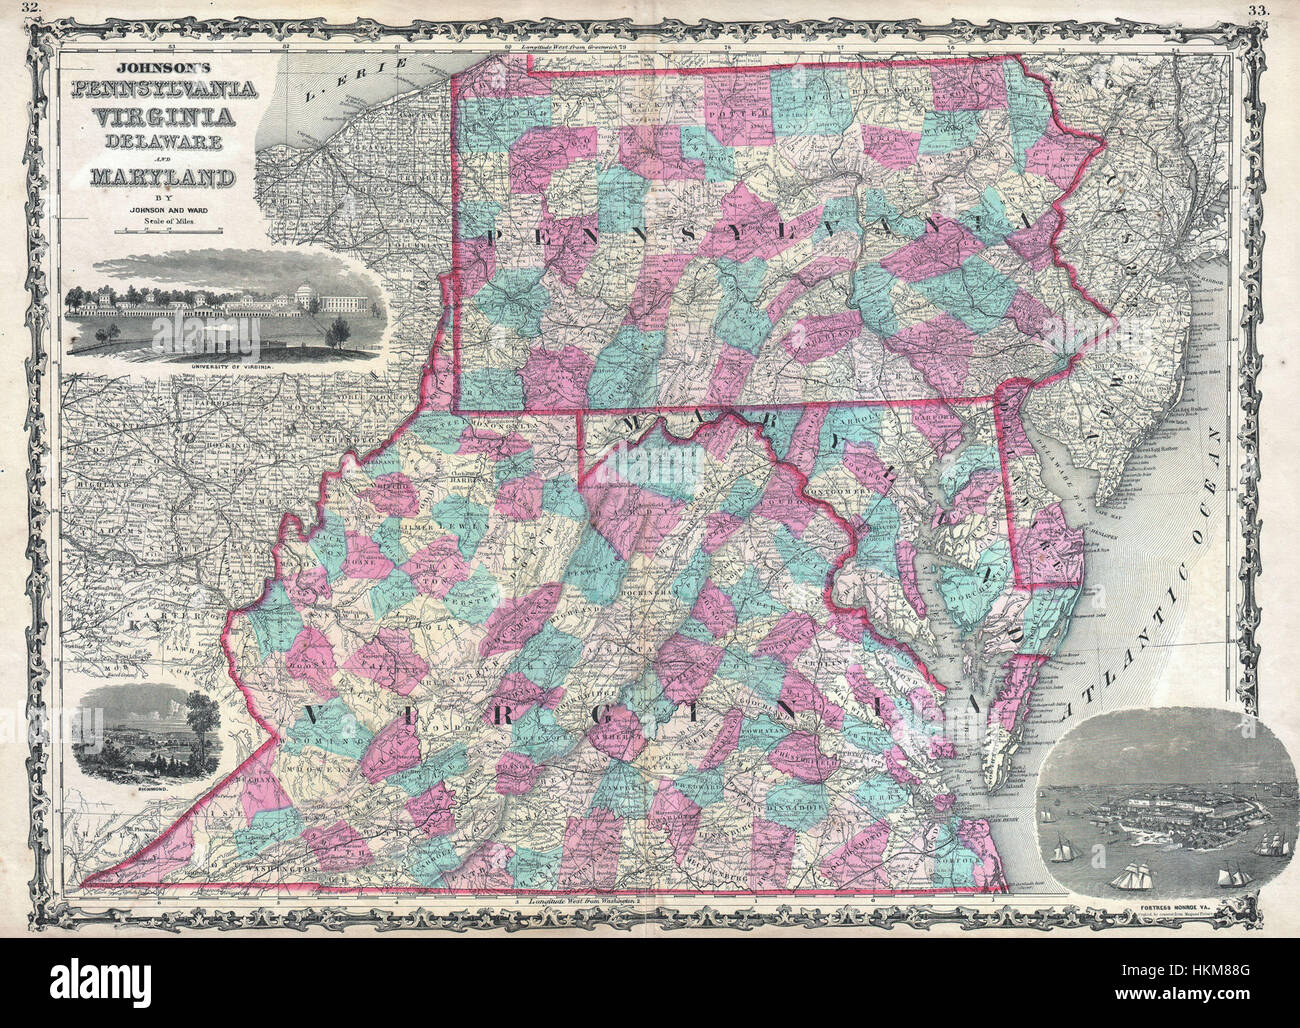 1862 Johnson Mapa de Virginia, Maryland, Delaware y Pennsylvania - Geographicus - VAPAMD-johnson-1862 Foto de stock